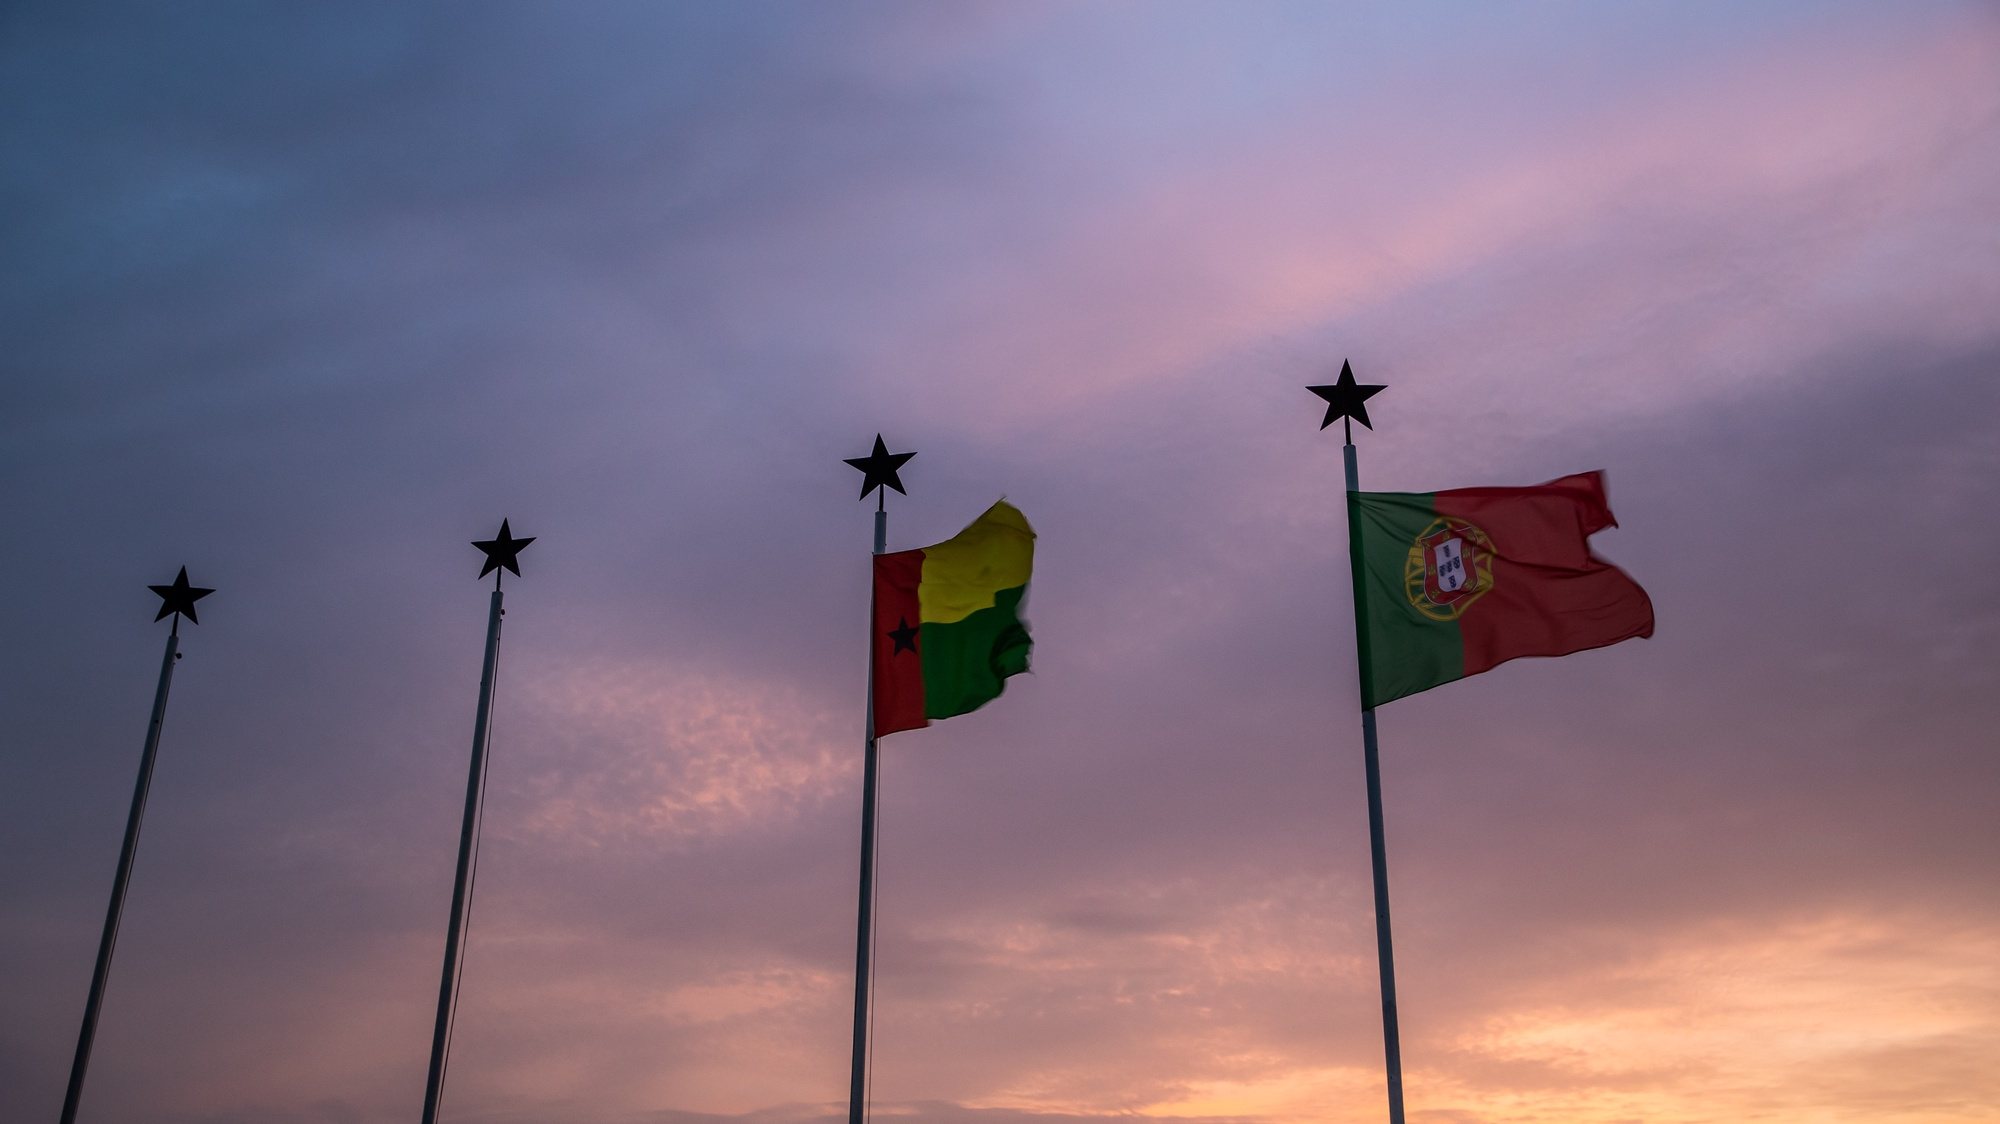 Bandeiras de Portugal e da Guiné-Bissau no Aeroporto Internacional Osvaldo Vieira, em Bissau, na Guiné-Bissau, 15 de maio de 2021. JOSÉ SENA GOULÃO/LUSA